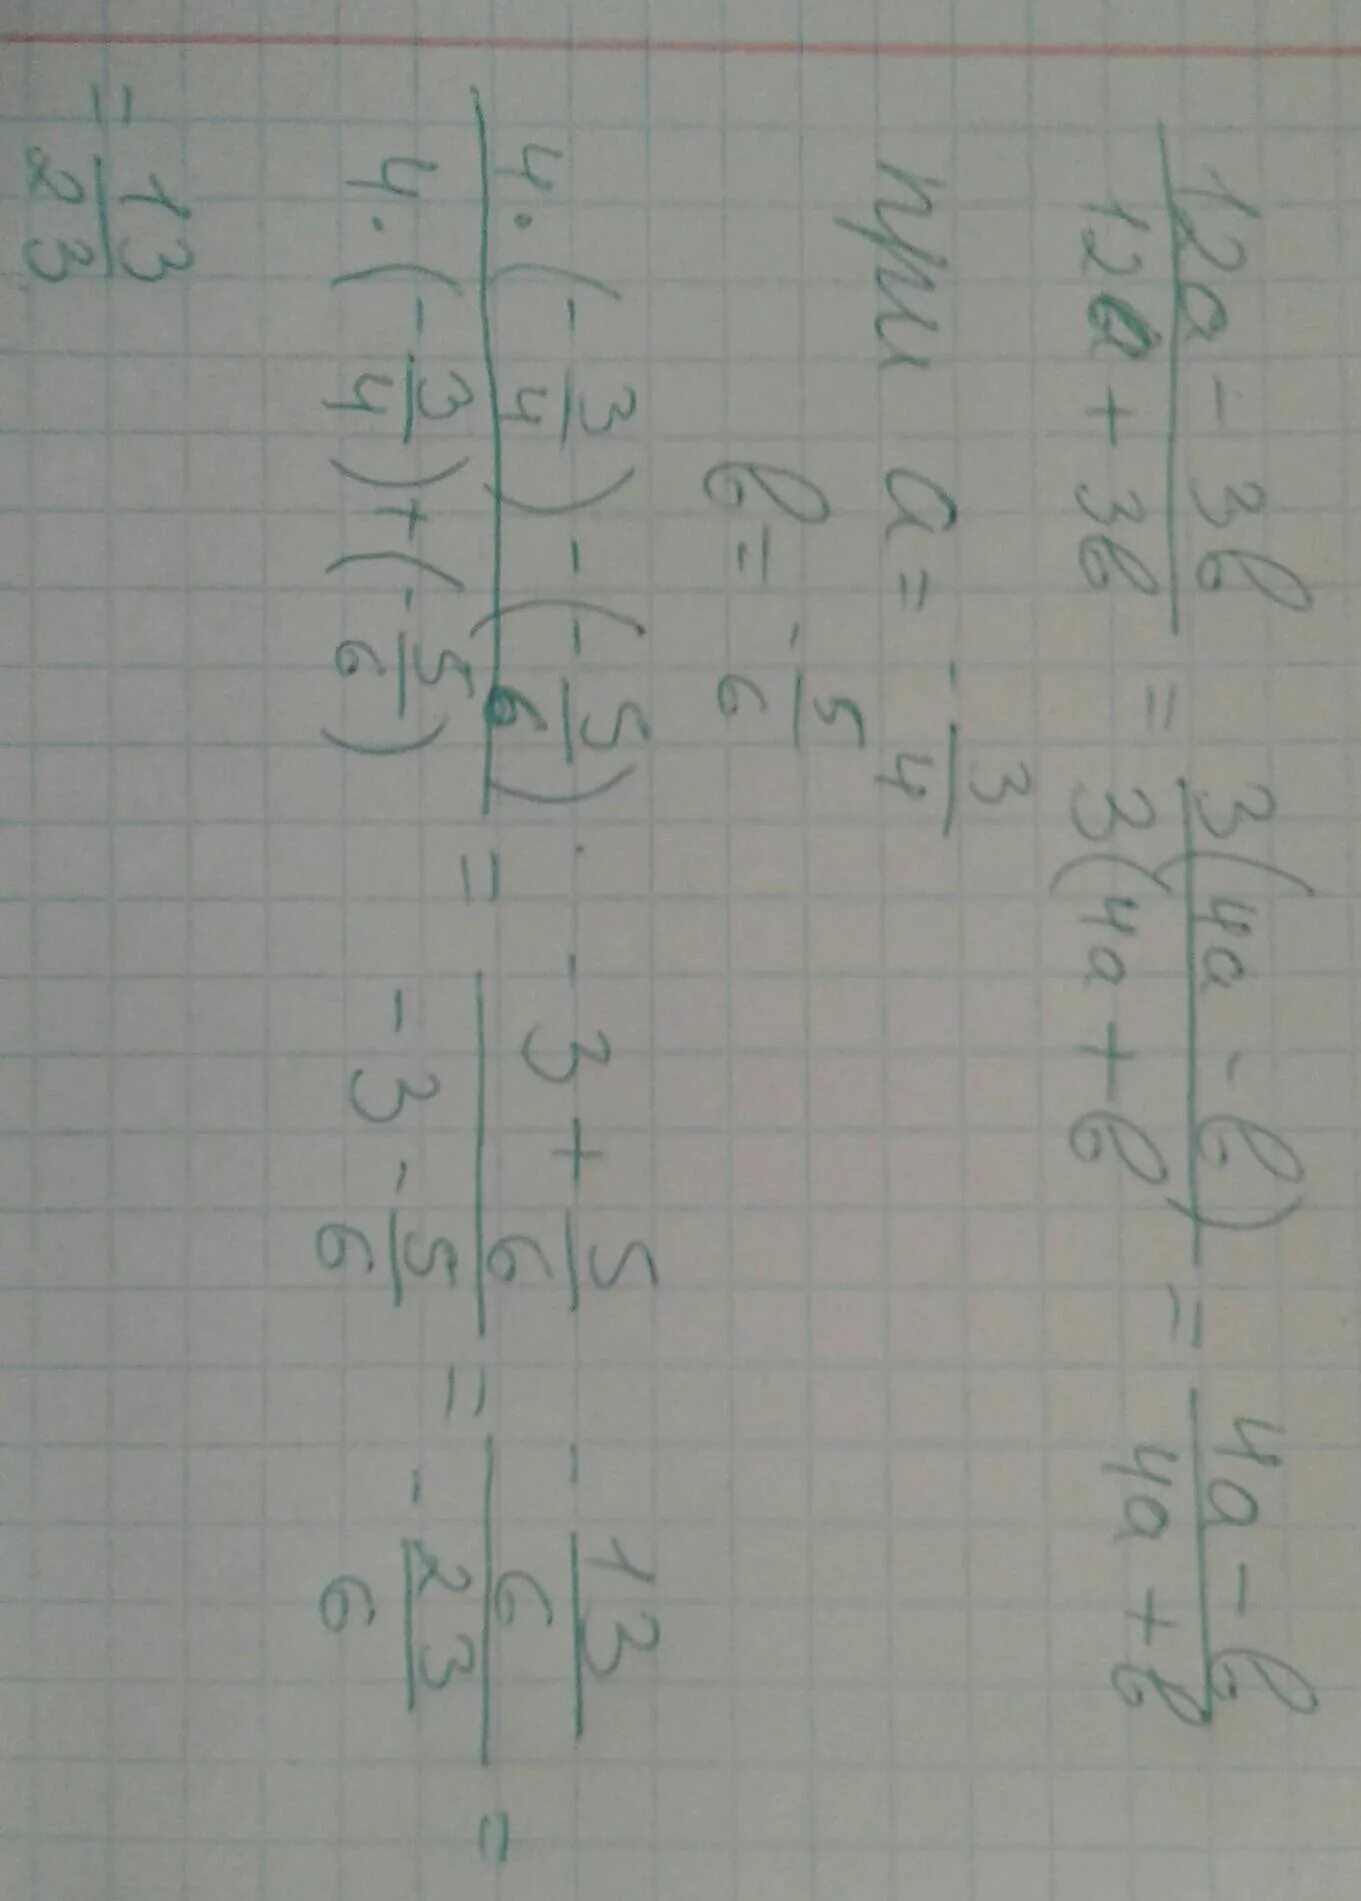 А 12 b 5 с 8. 3а\-4 б/3(-12а/н б /-4). 12а-3b при а -3/4. А) 2/3+3/4= /12. 12а-3b при а -3/4 а b 5/6.